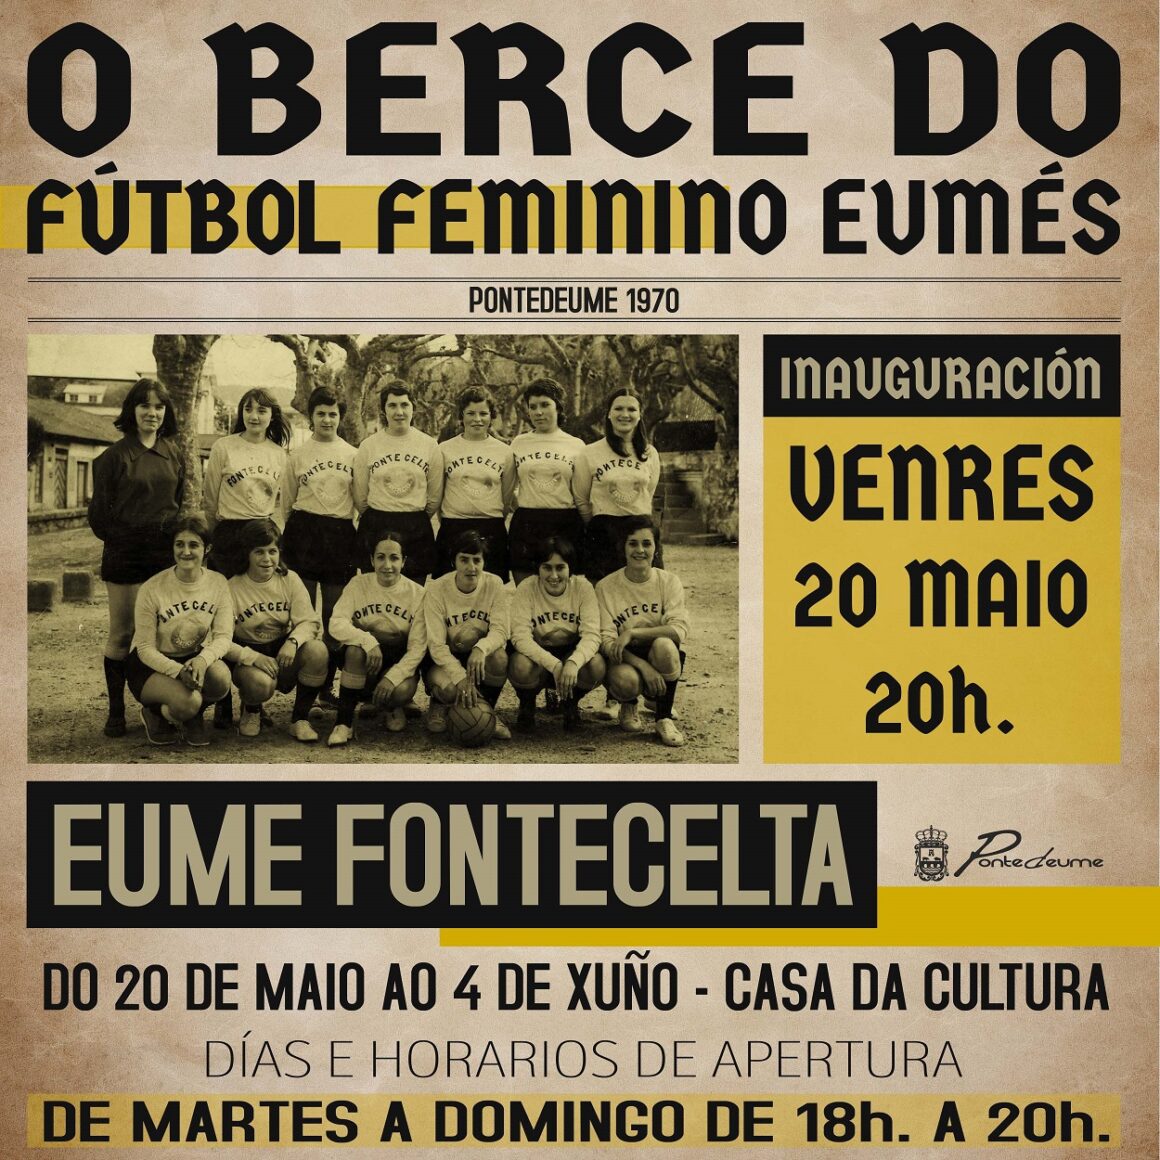 Inauguración de la exposición «EUME FONTECELTA: la cuna del fútbol femenino eumés».